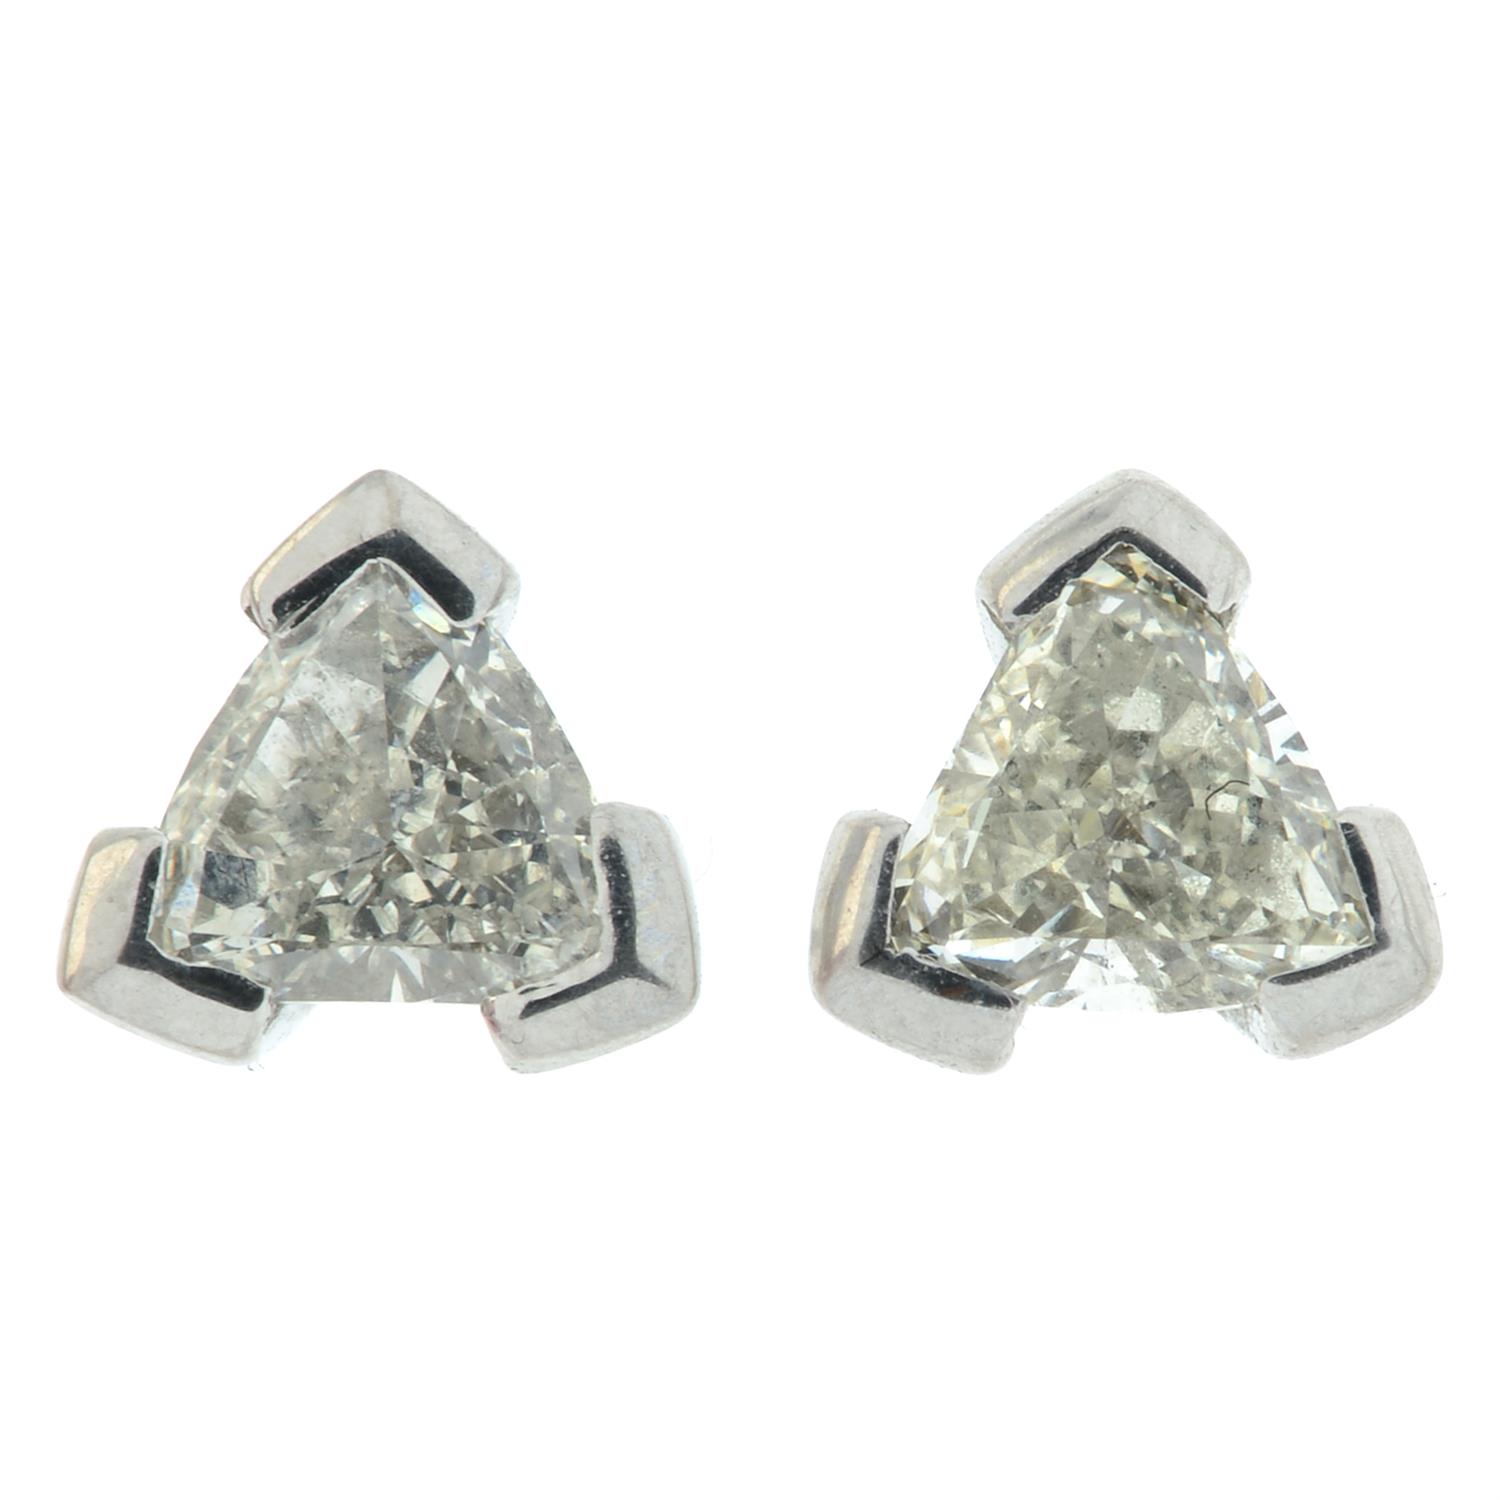 Diamond stud earrings